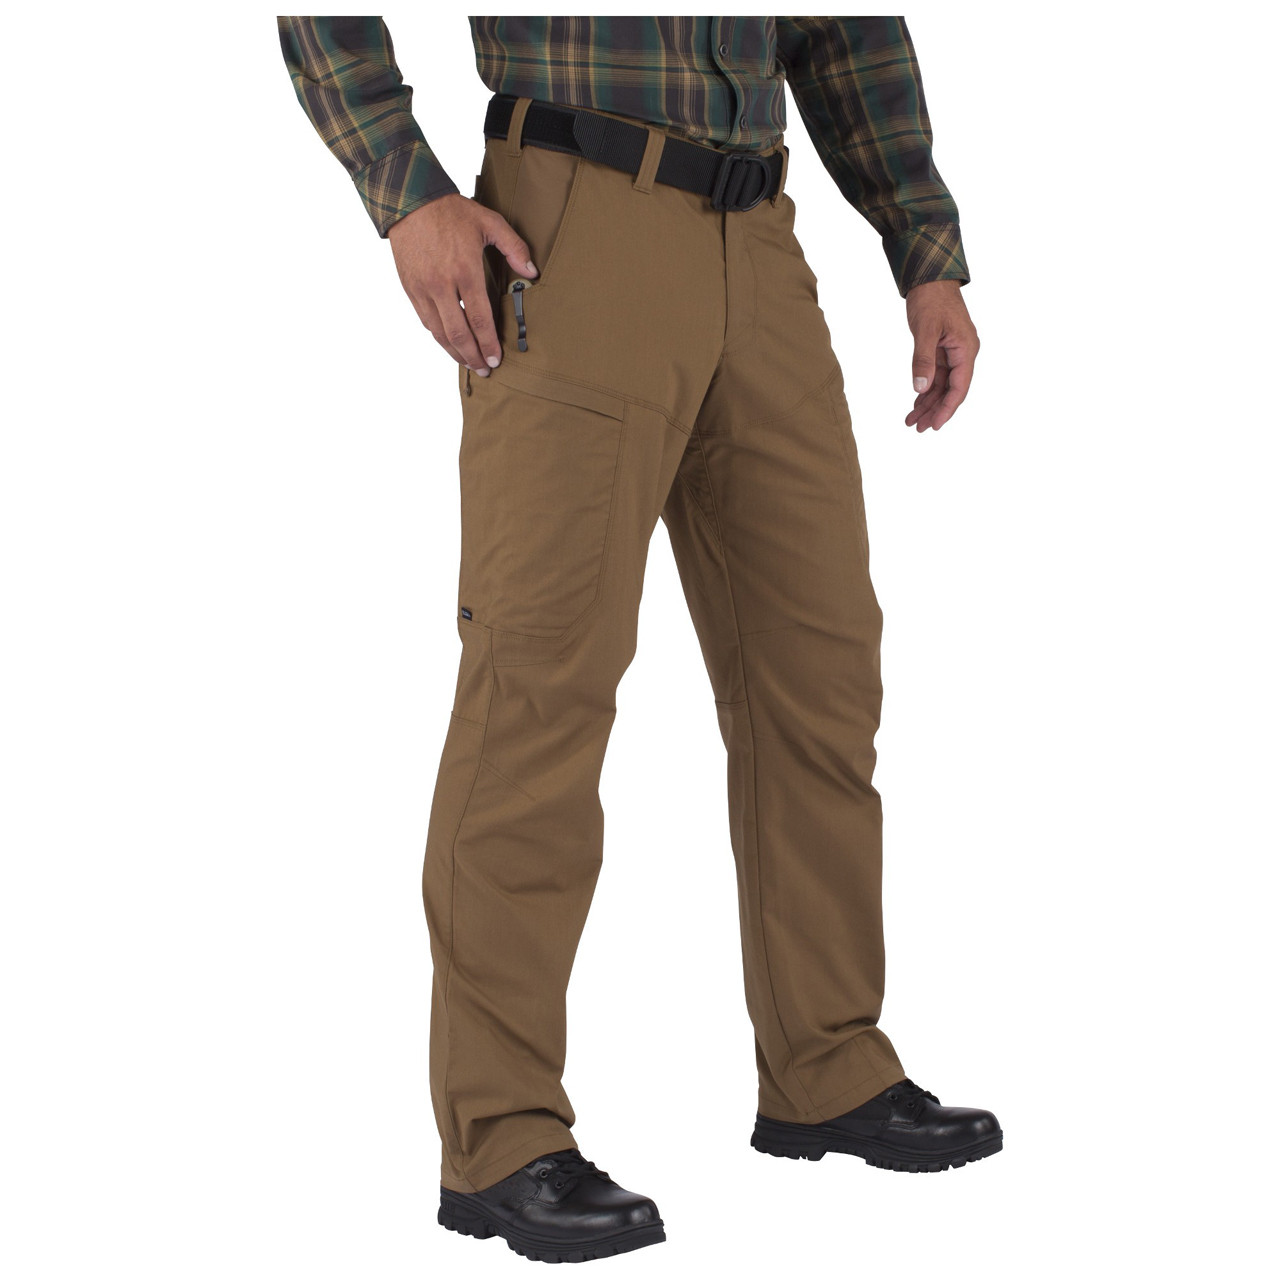 5.11 Tactical Pants 